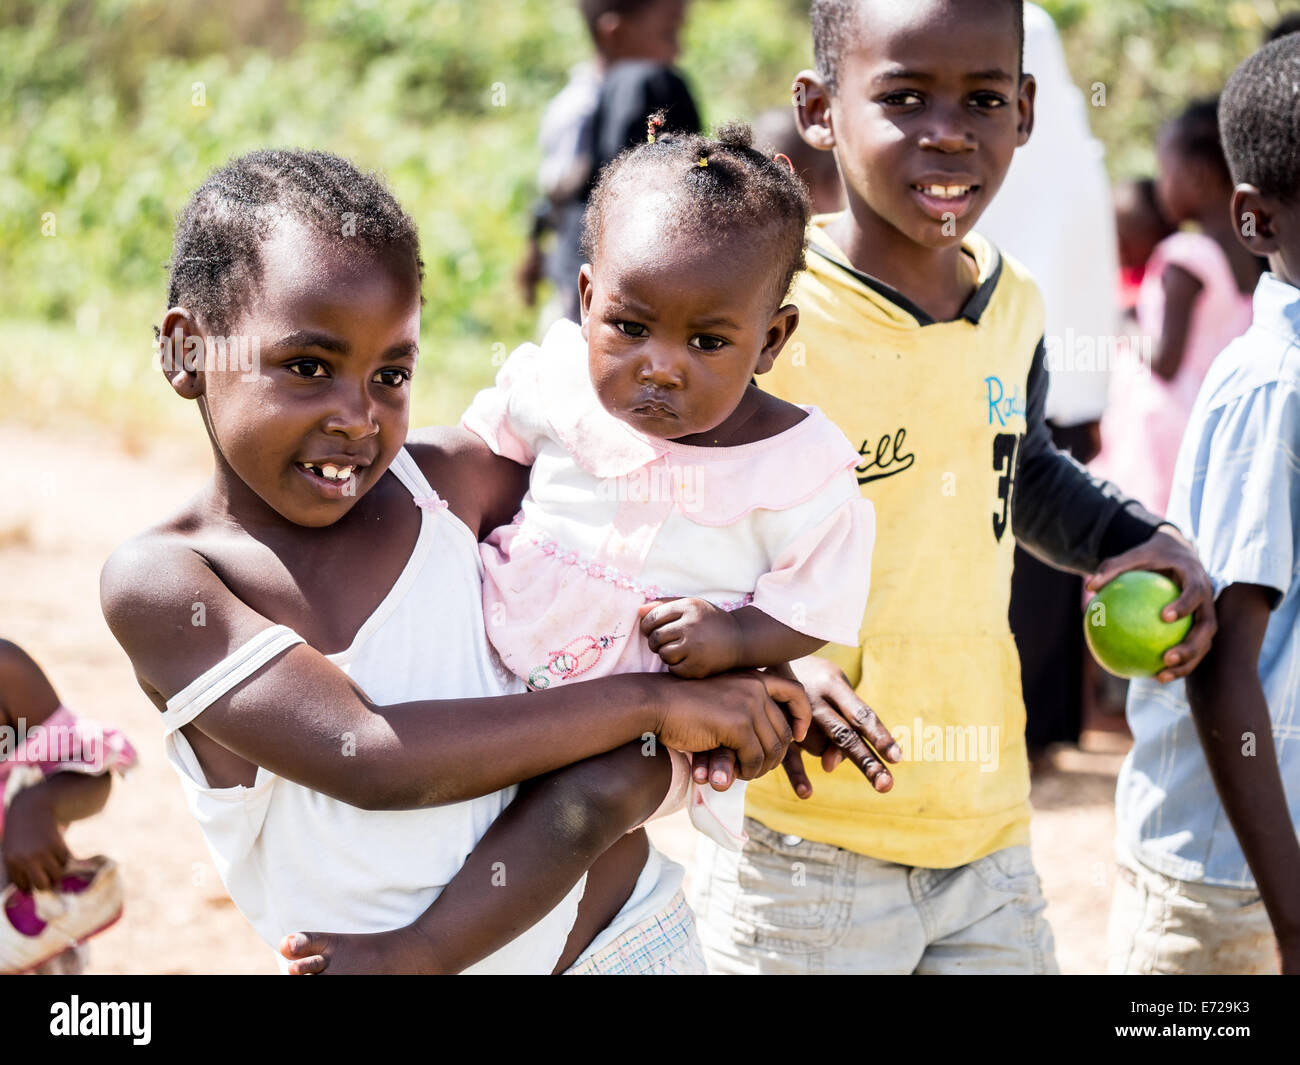 Einheimische Kinder Leute Fotos von ihnen in eines der Dörfer auf Zanzibar Island, Tansania, Ostafrika zu Fragen. Horizontale Stockfoto